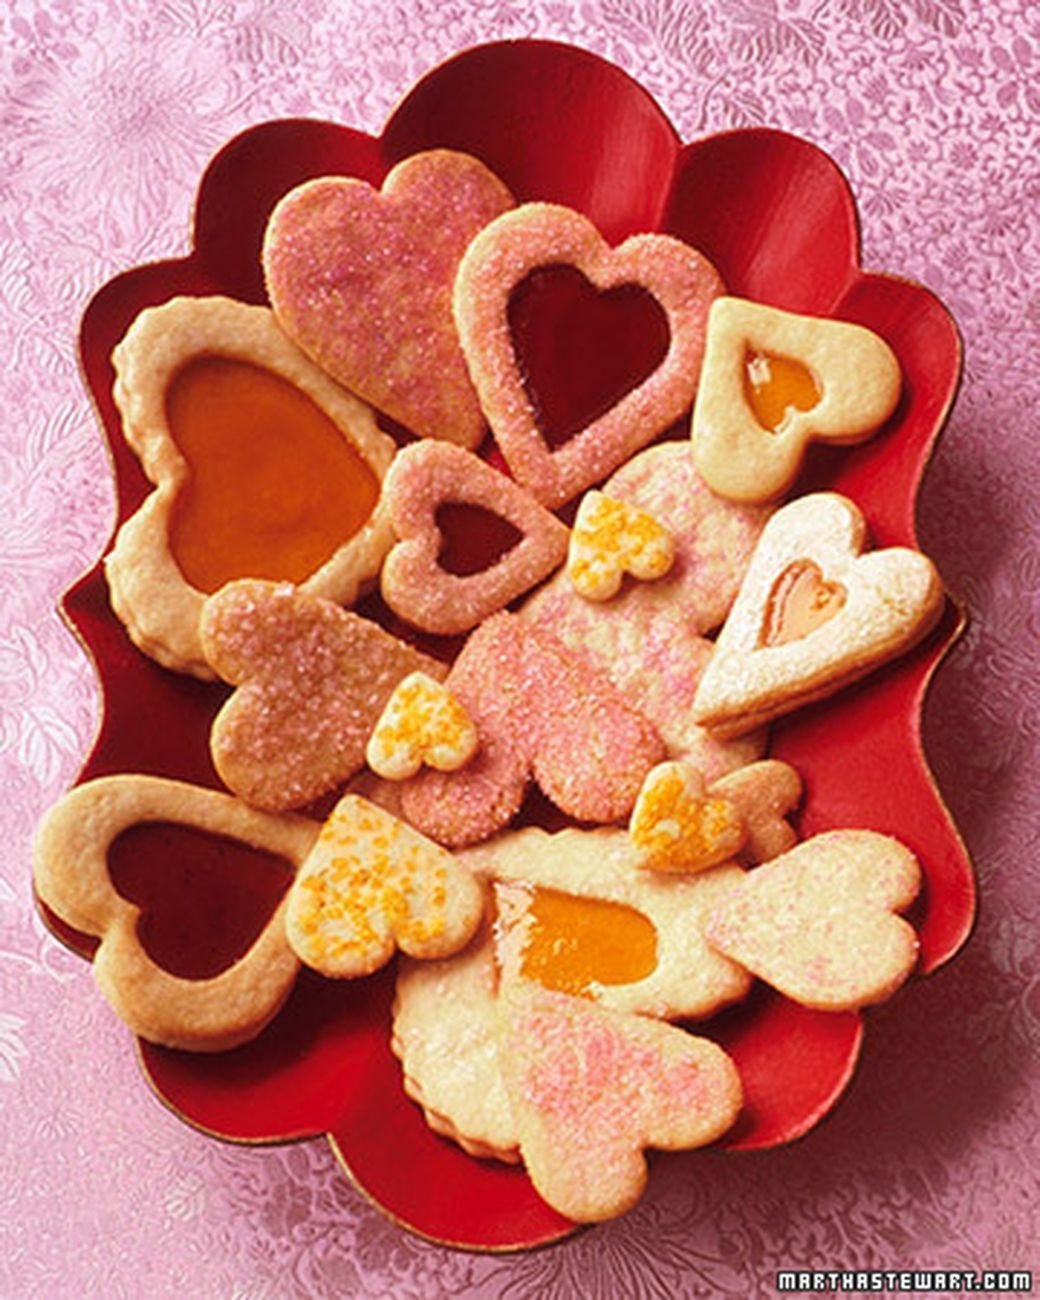 Домашня печеня. Красивое печенье. Печенье в виде сердечек. Форма для печенья сердце. Песение в виде сердечек.